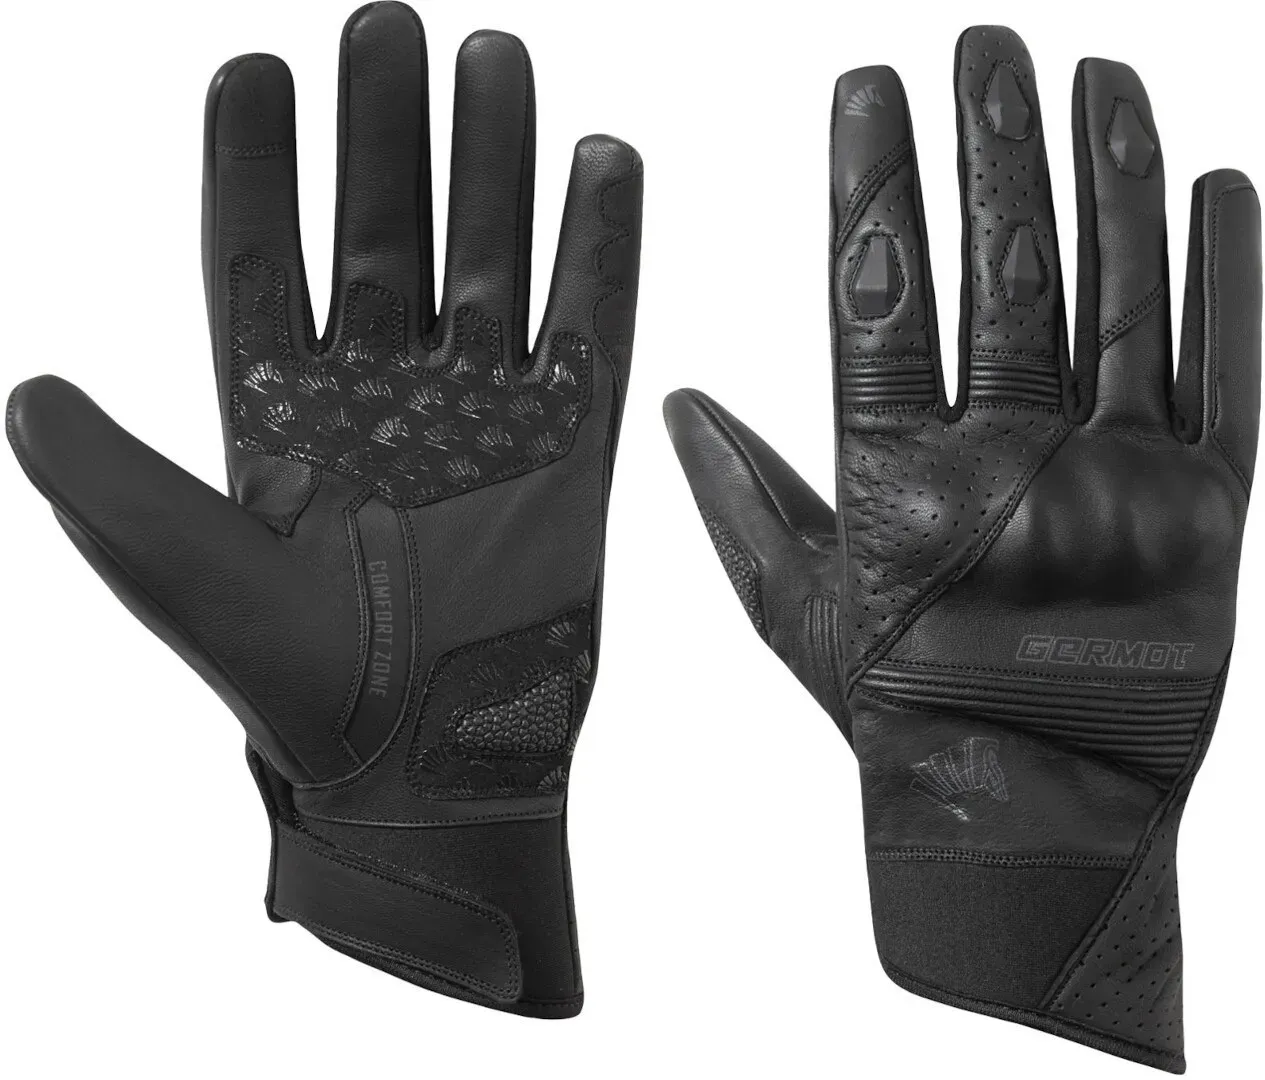 Germot Thompson Motorrad Handschuhe, schwarz, Größe 3XL